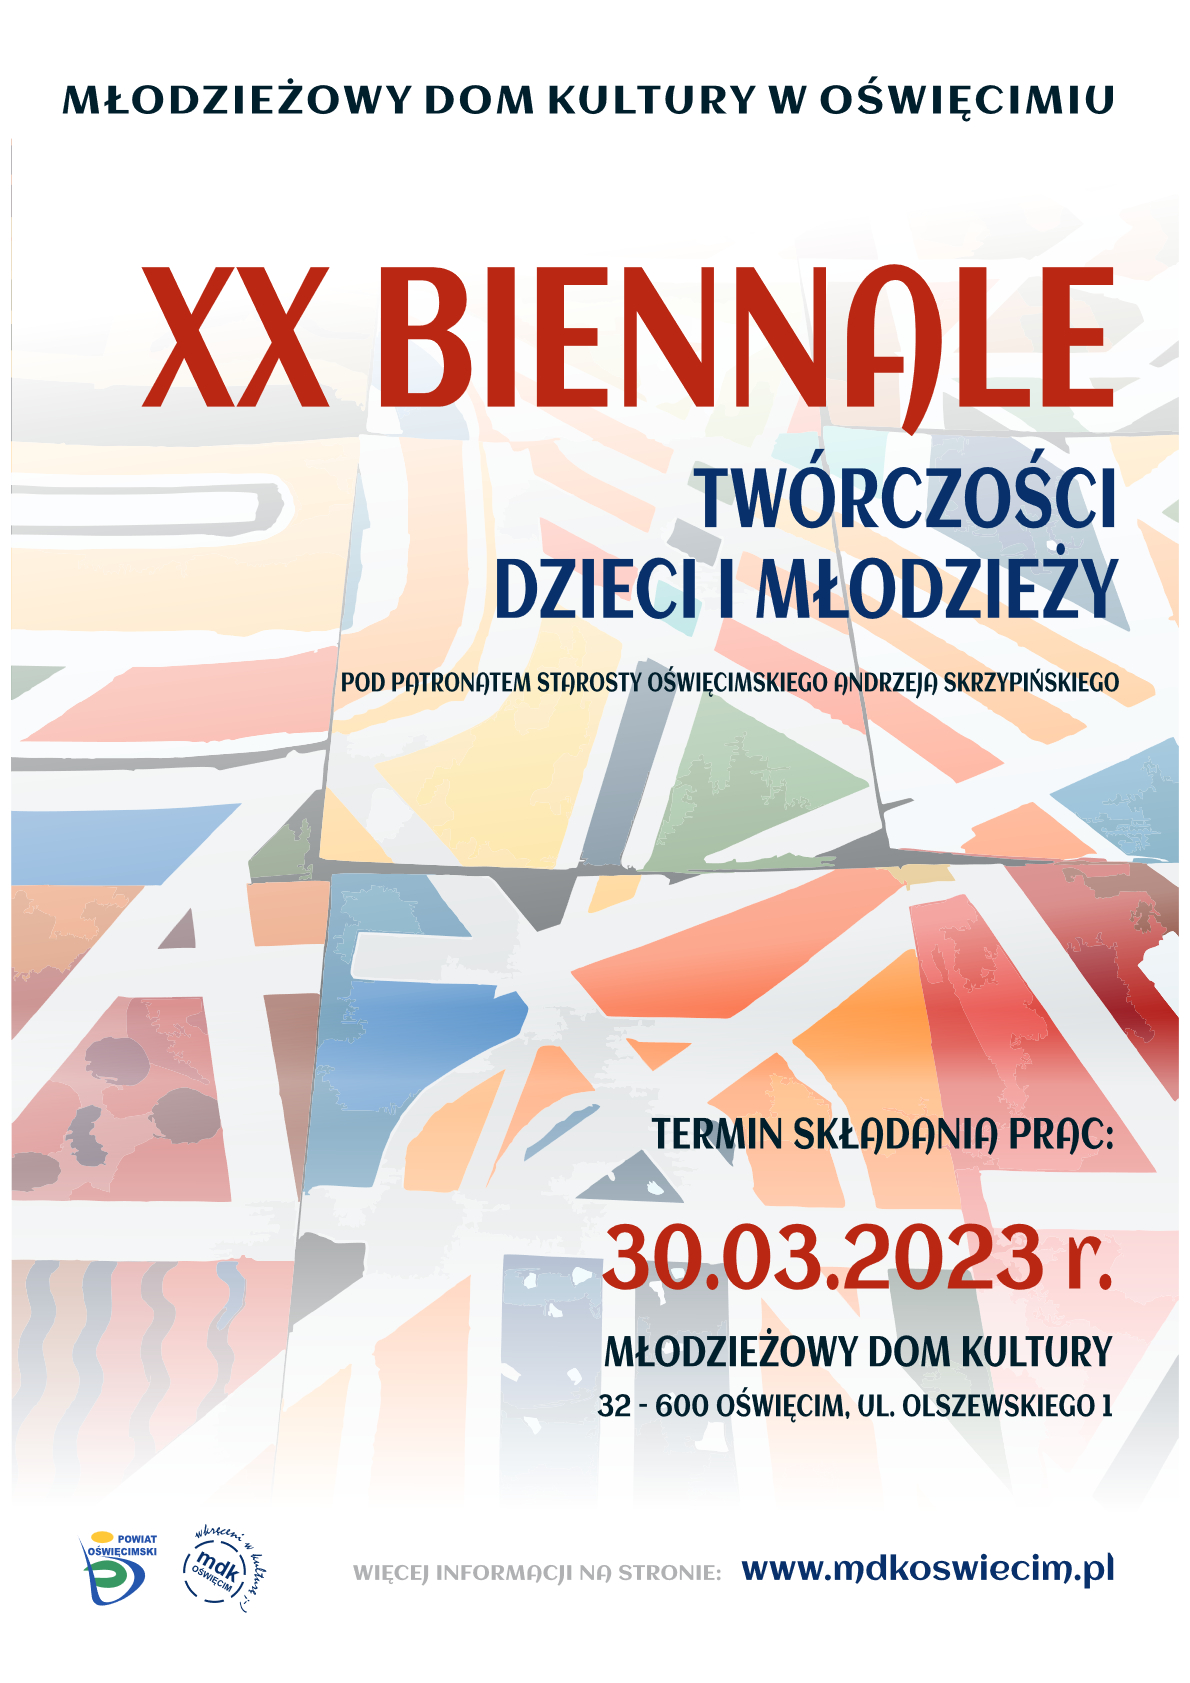 XX Biennale Twórczości Plastycznej Dzieci i Młodzieży mdkoswiecim.pl info oswiecim info malopolska plakat-biennale11-1